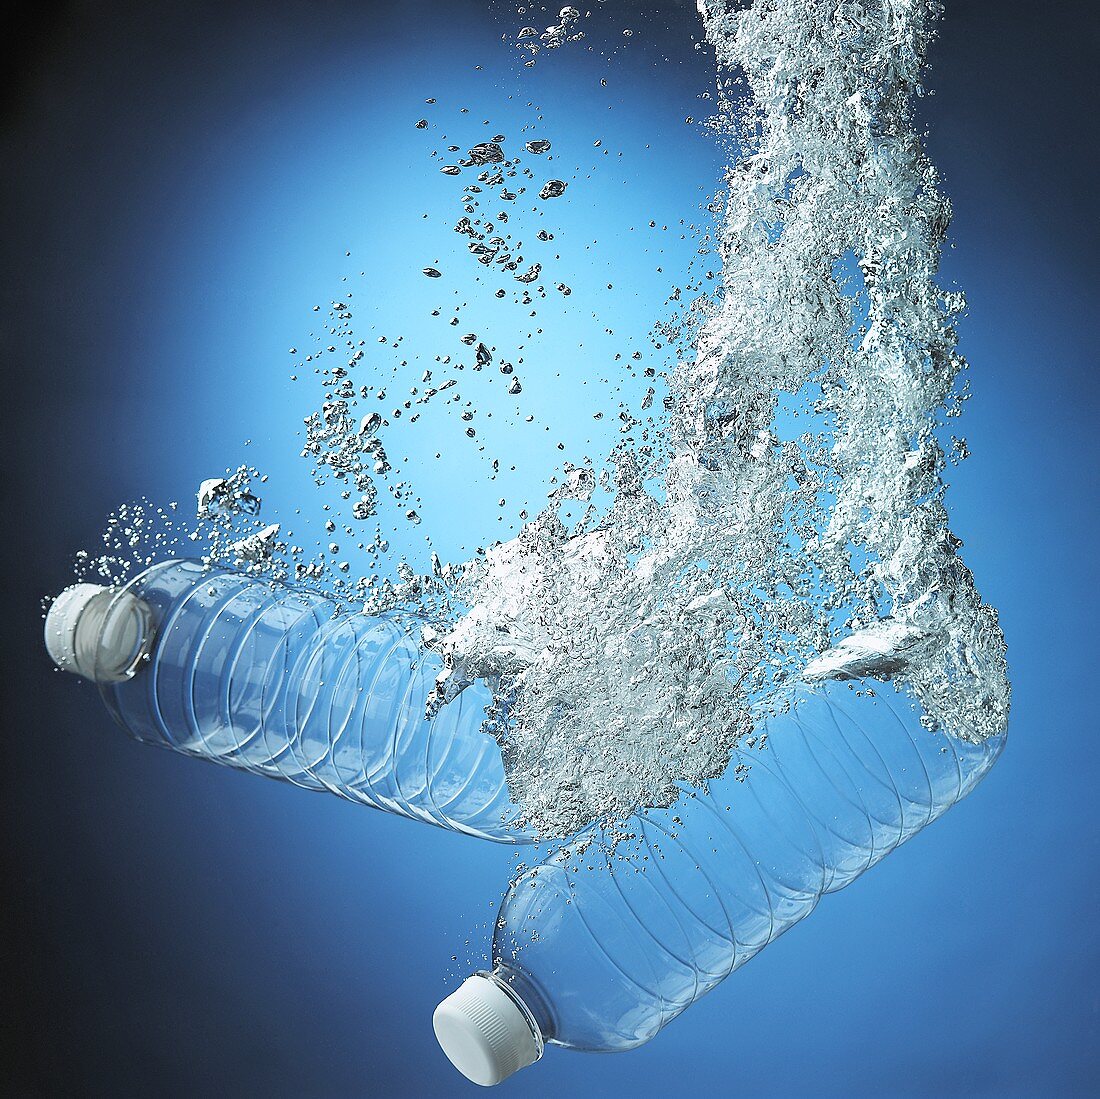 Plastikflaschen fallen ins Wasser